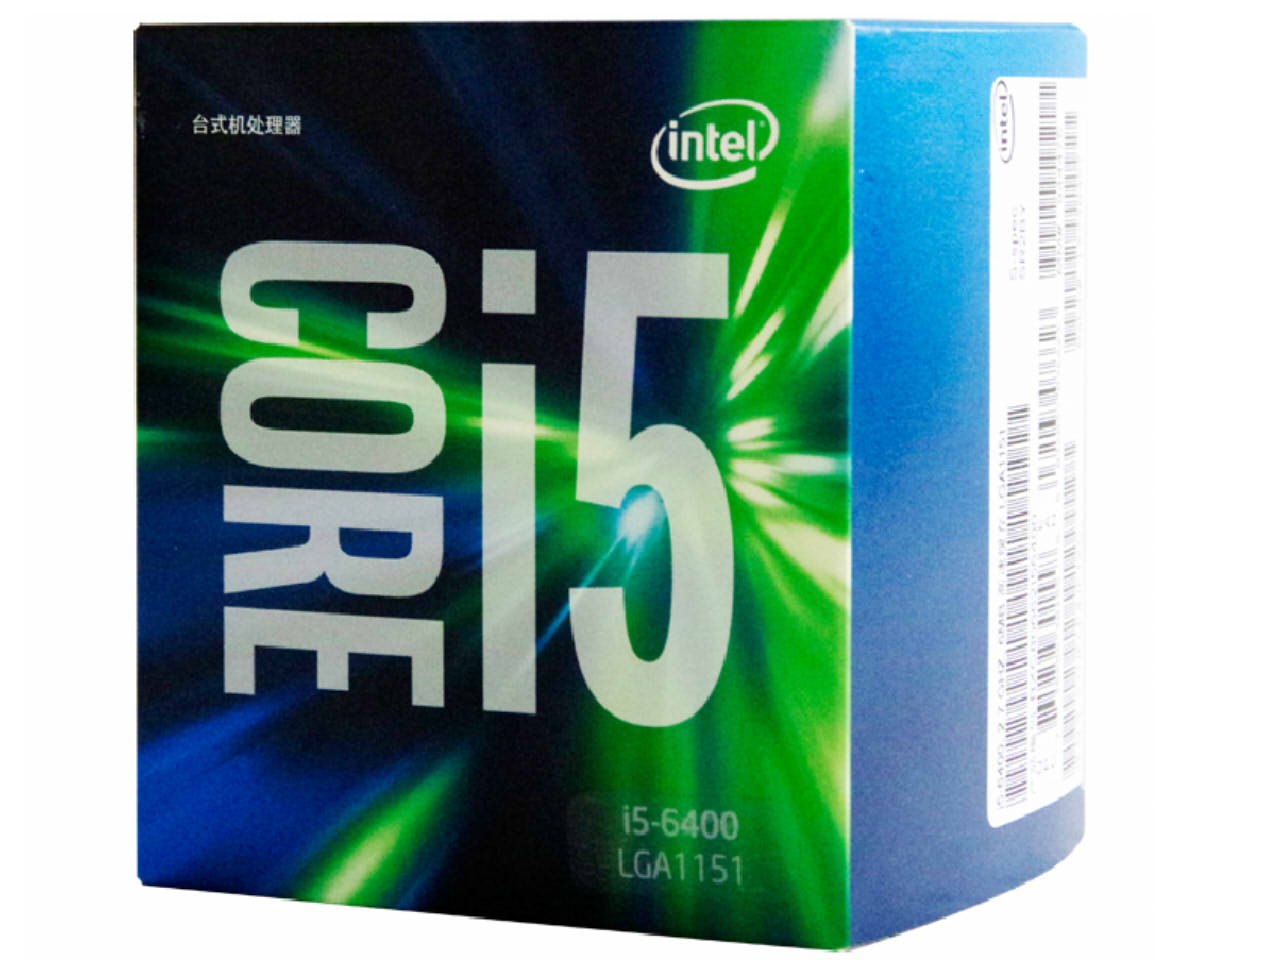 新品热销!Core i5-6400盒装装机促销价1150元